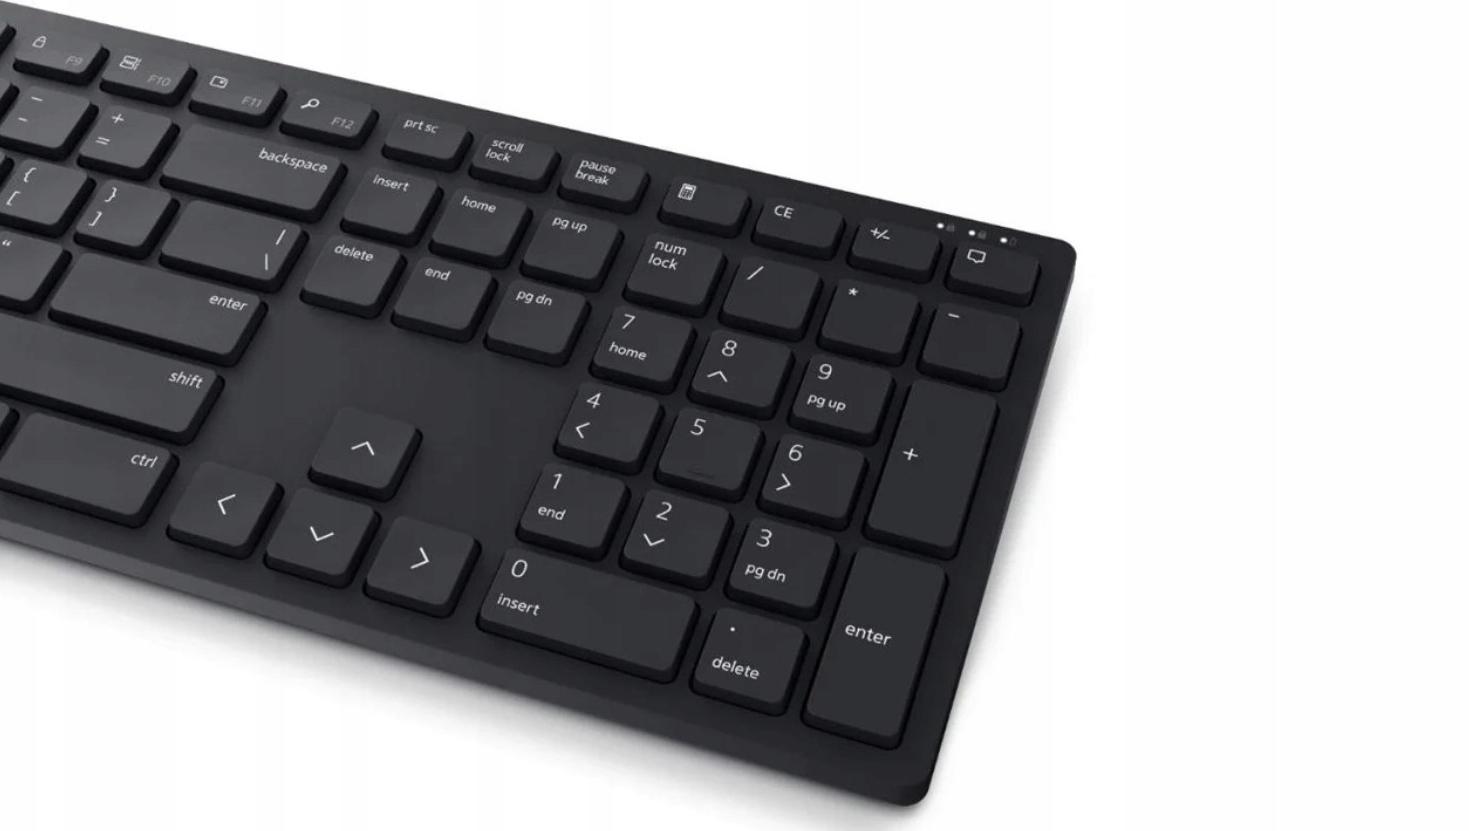 Bezprzewodowy zestaw klawiatura i mysz Dell KM5221W Pro Wireless - bezpieczeństwo to podstawa!